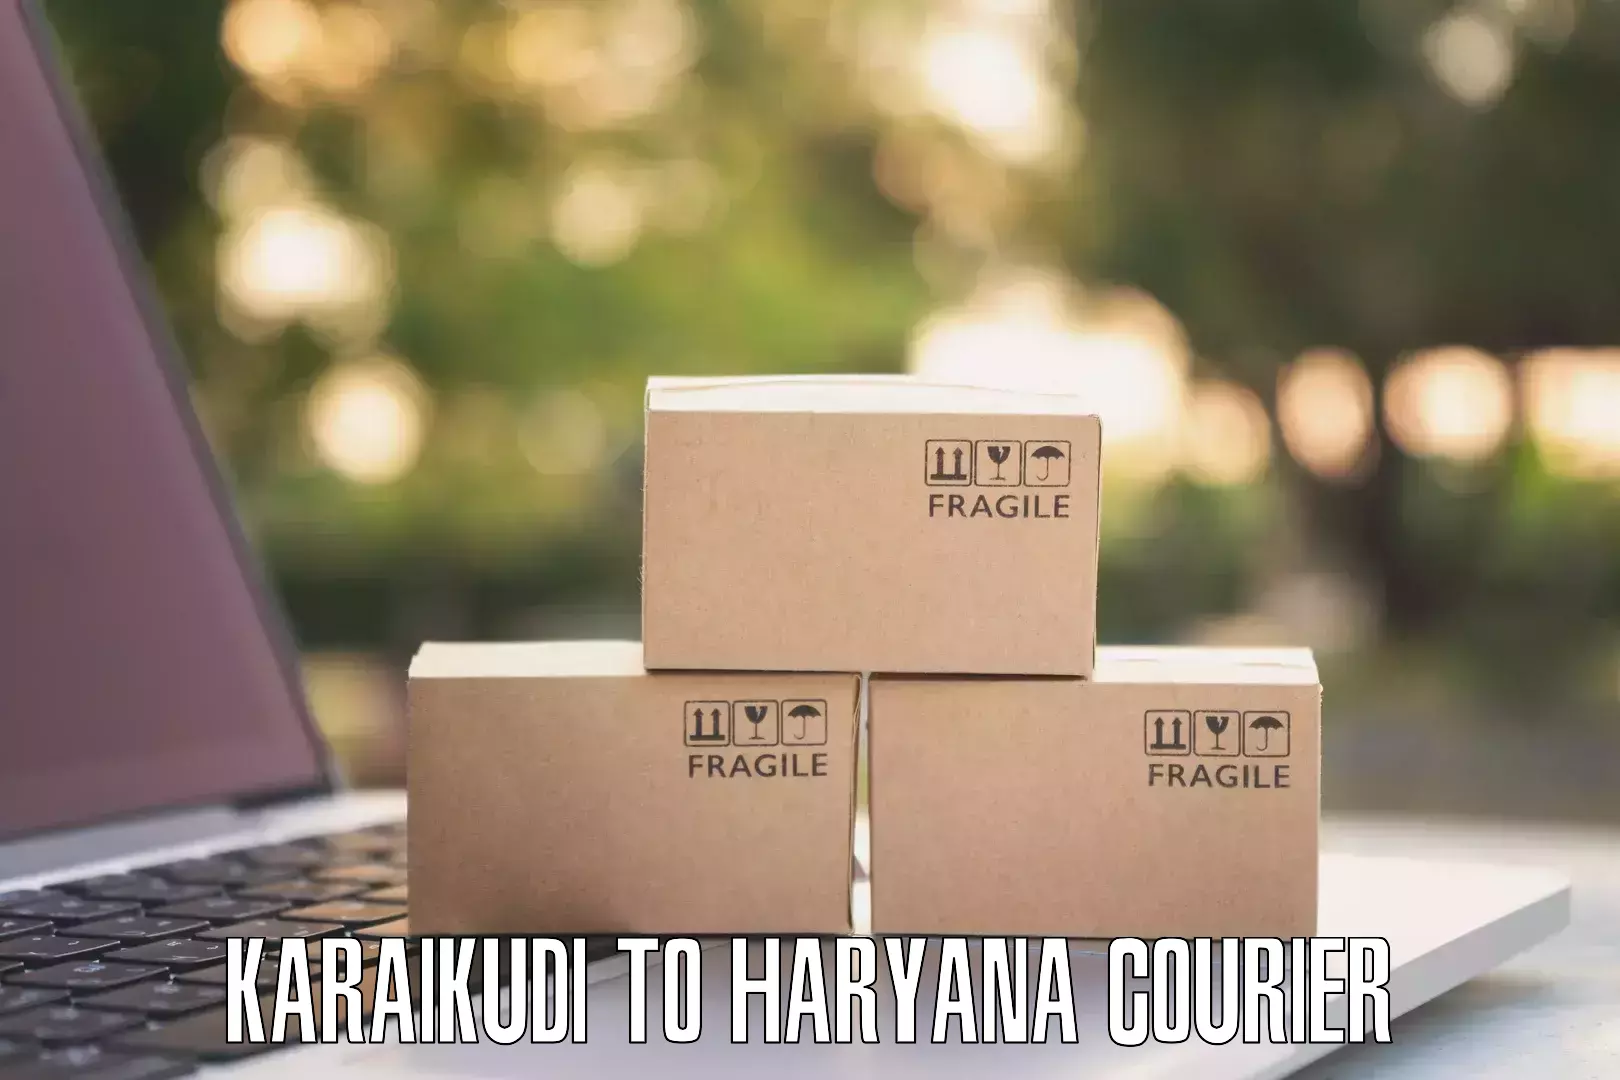 Seamless shipping service Karaikudi to Haryana